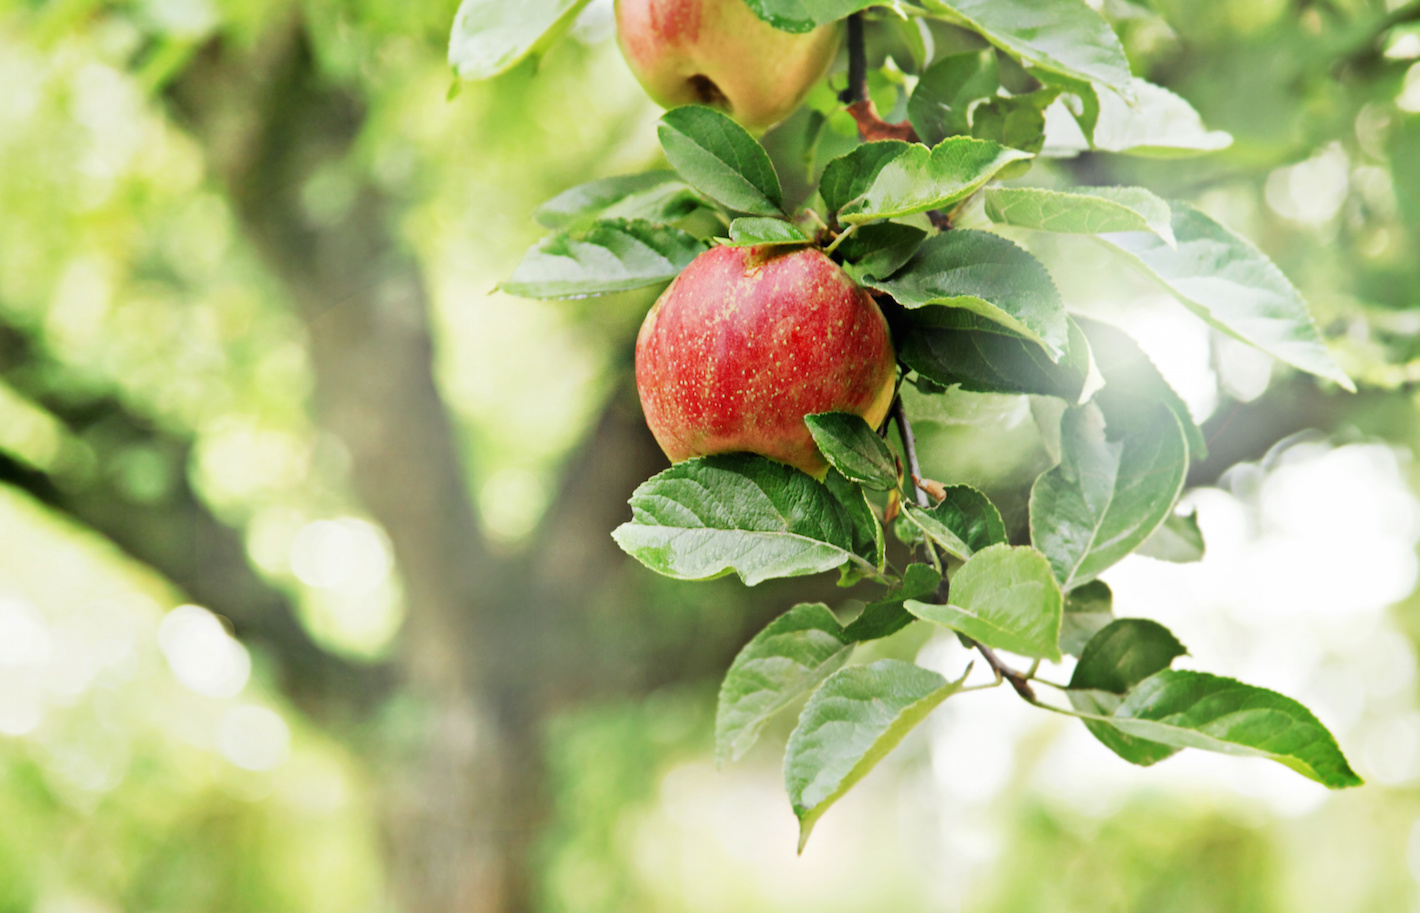 Jabłkowa pielęgnacja cery od marki Biolonica